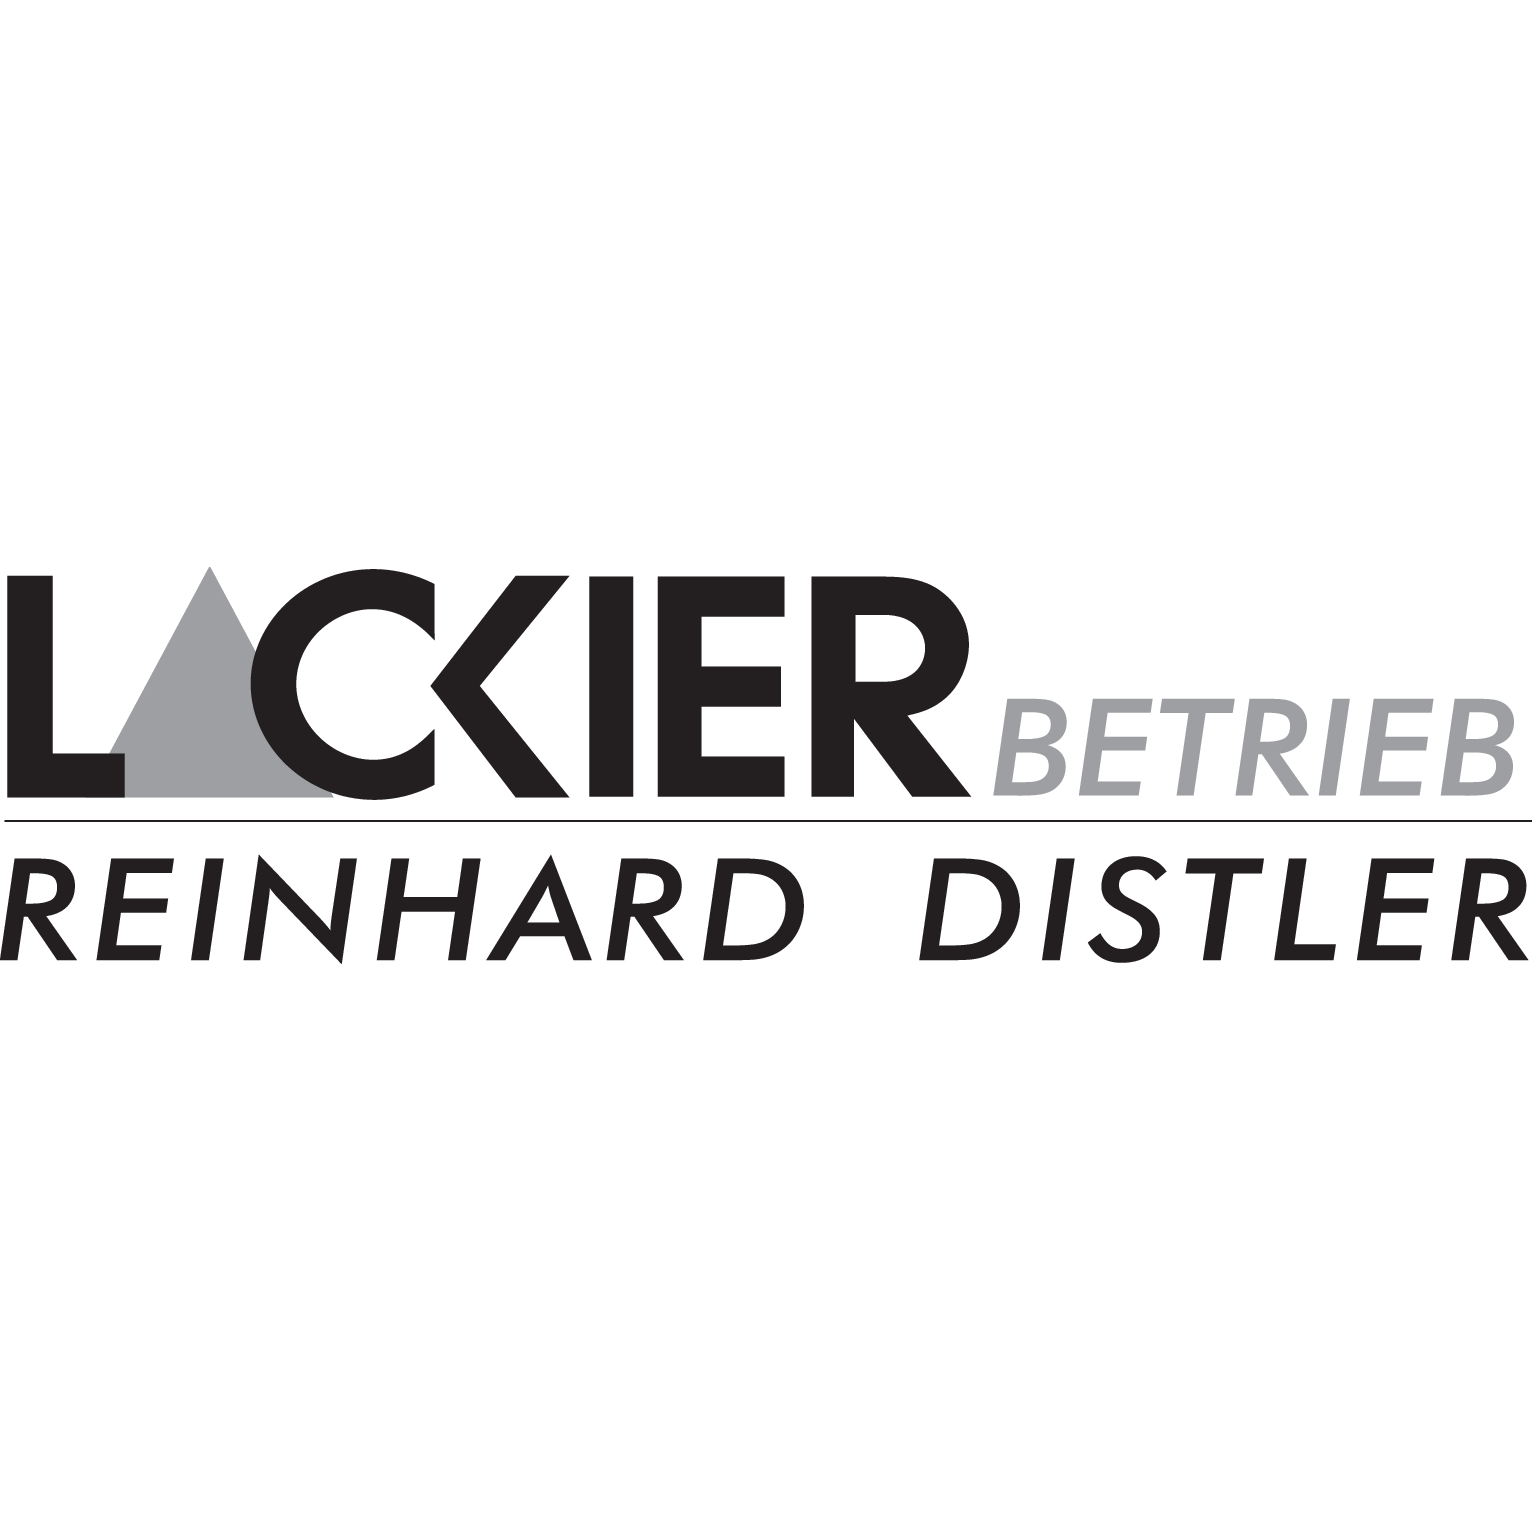 Lackierbetrieb Reinhard Distler in Hilpoltstein - Logo